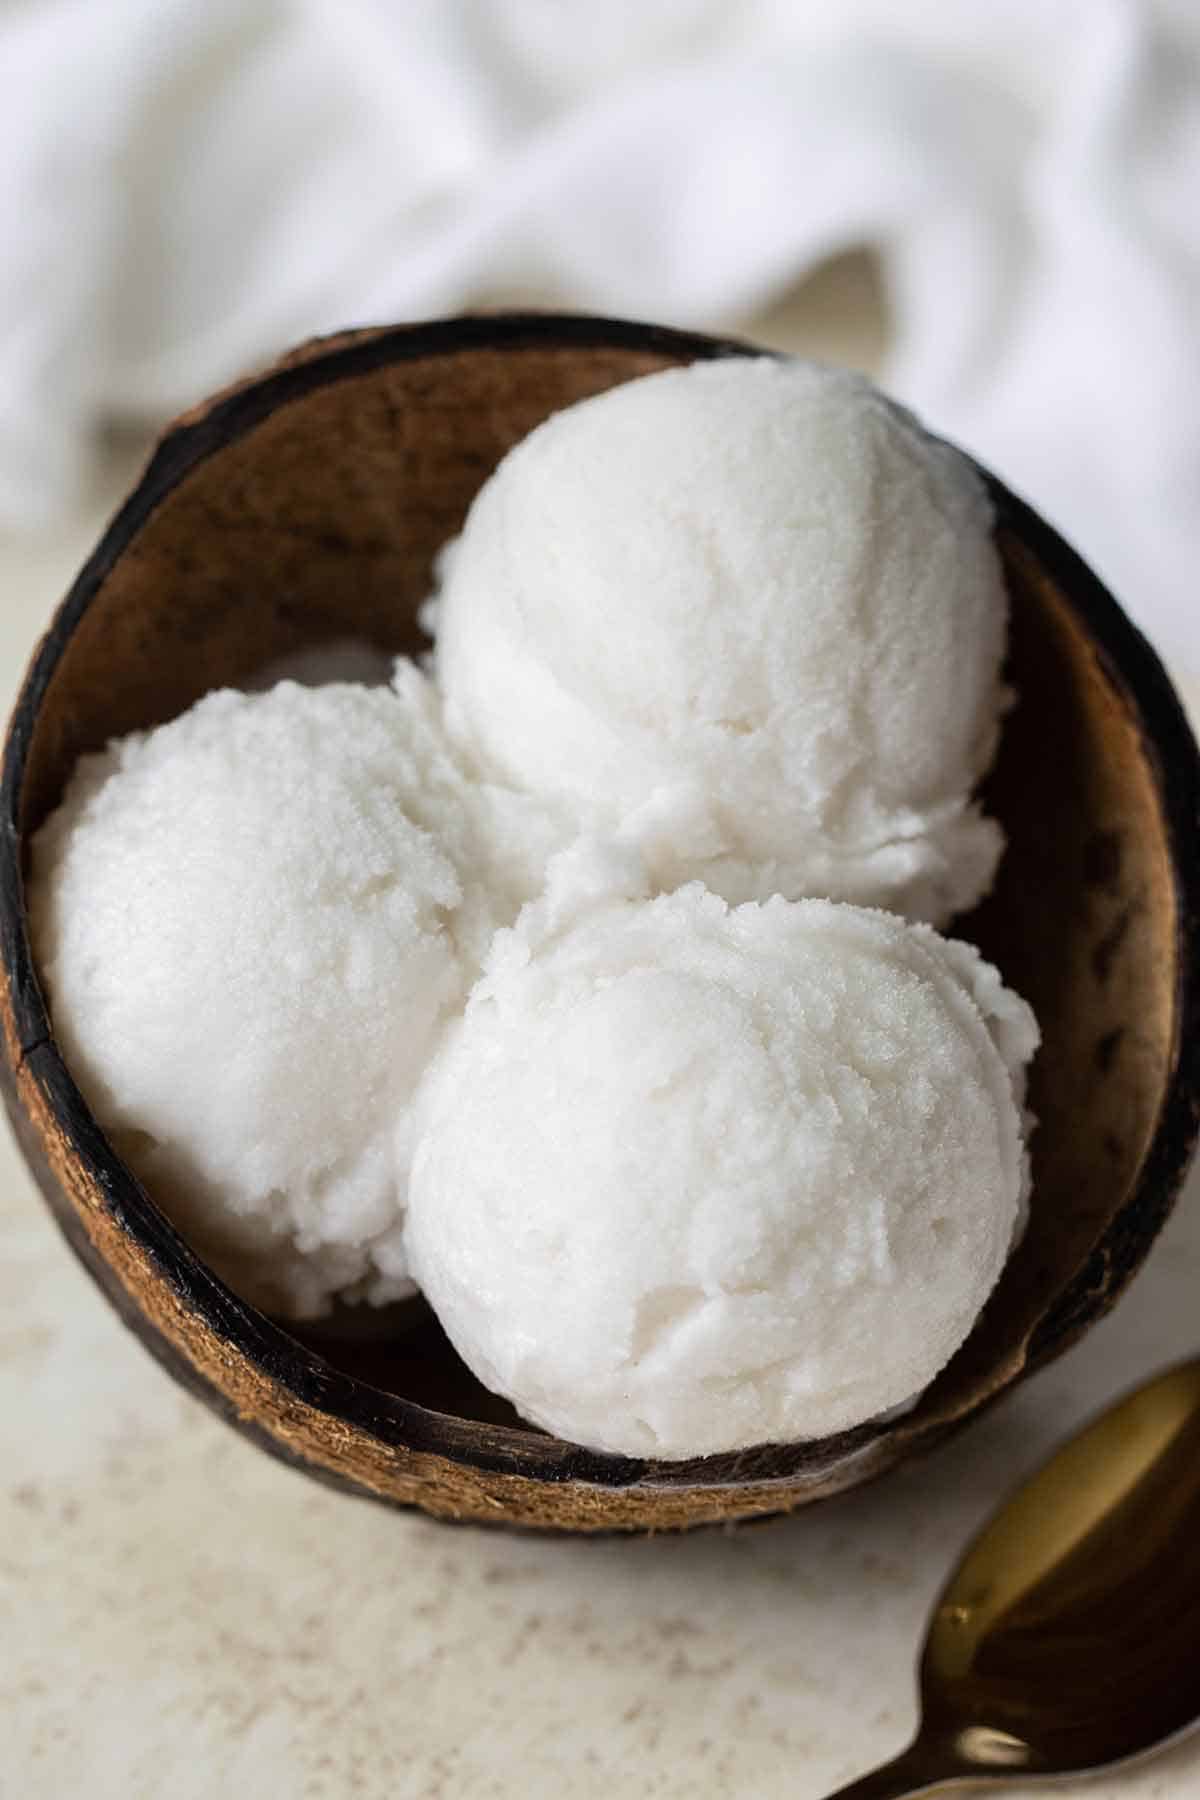 tres bolas de helado de coco dentro de un coco seco con una cuchara de oro al lado.